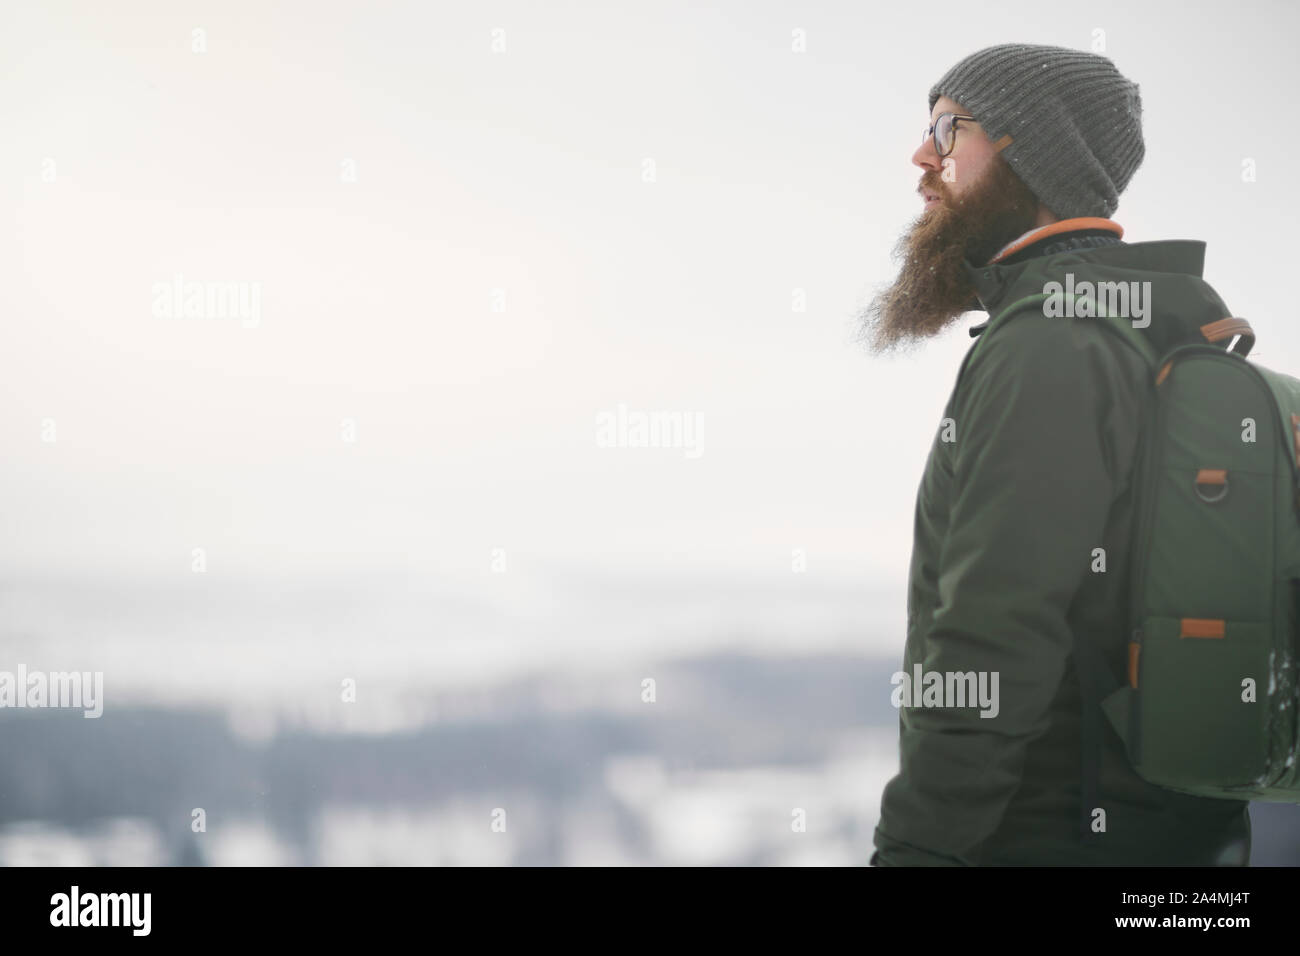 Mann mit Bart im Winter Stockfoto